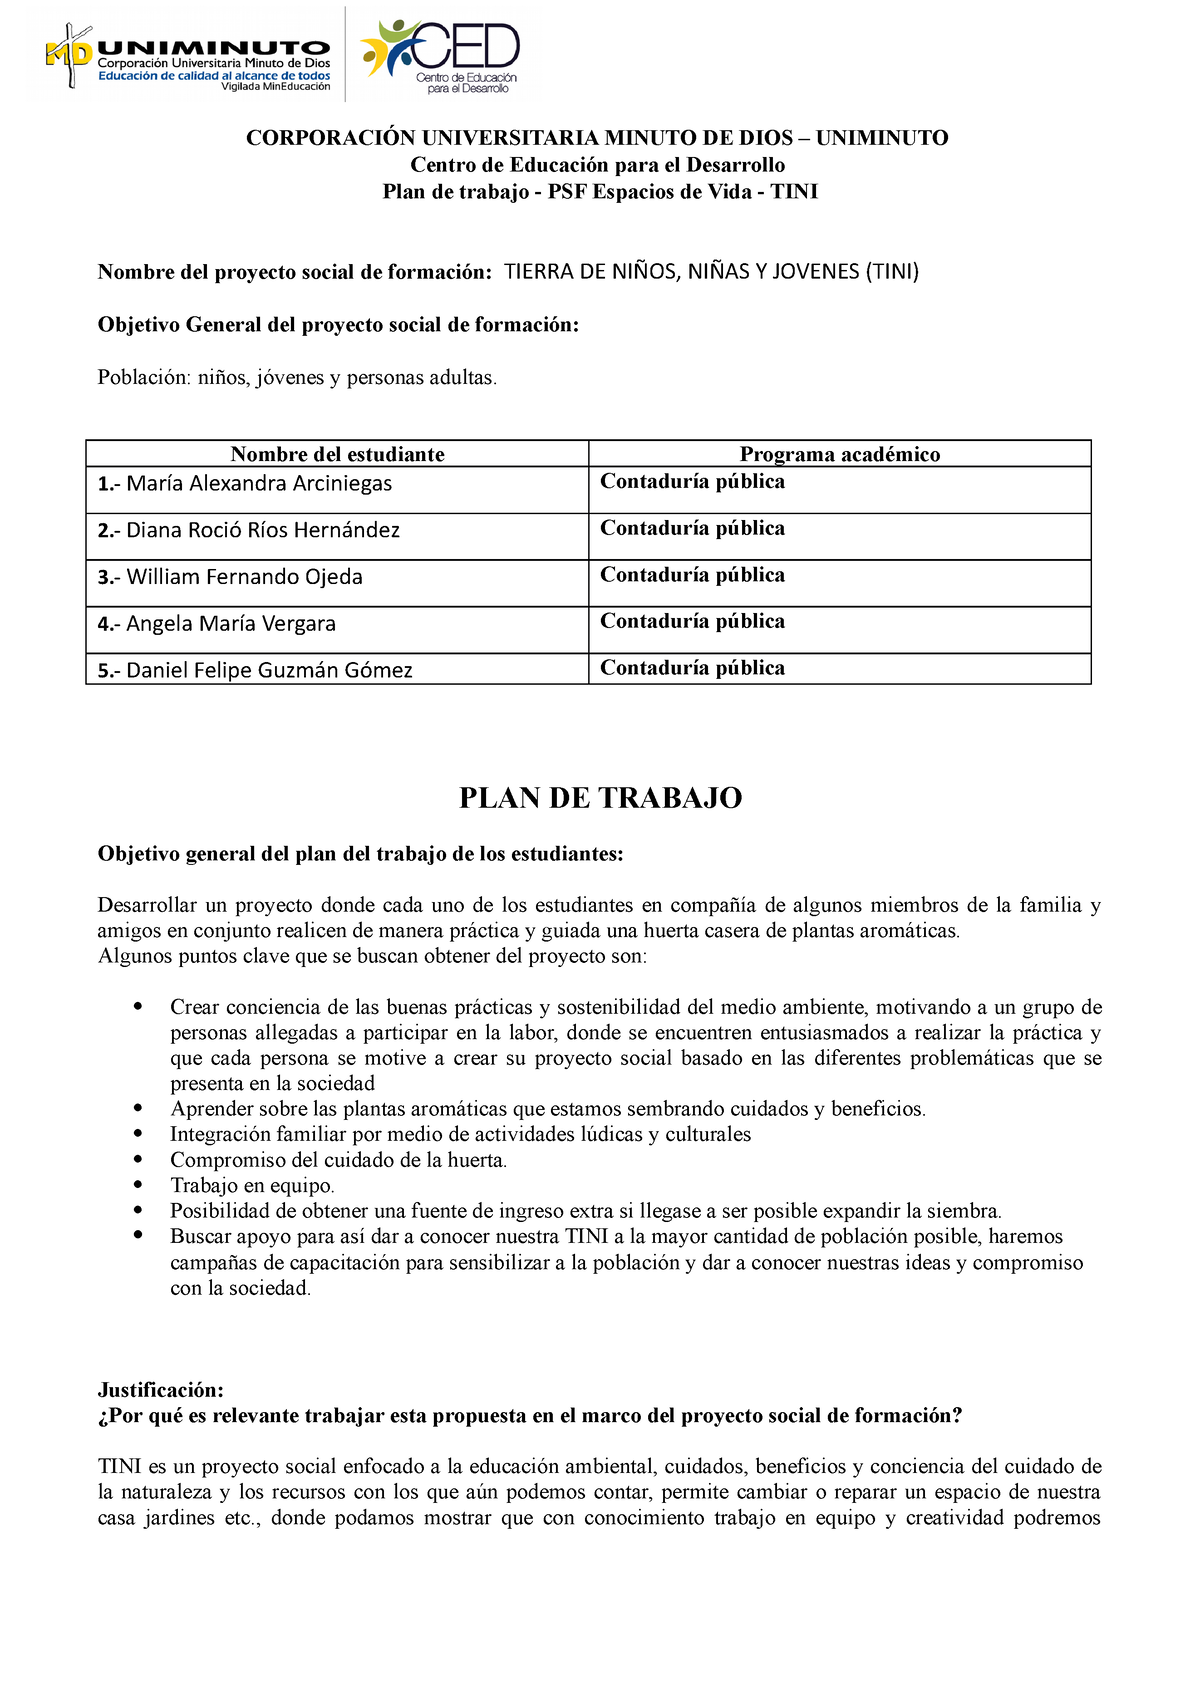 Plan De Trabajo Proyecto Tini Nrc 2184 Marzo 06 2022 CorporaciÓn Universitaria Minuto De Dios 9710